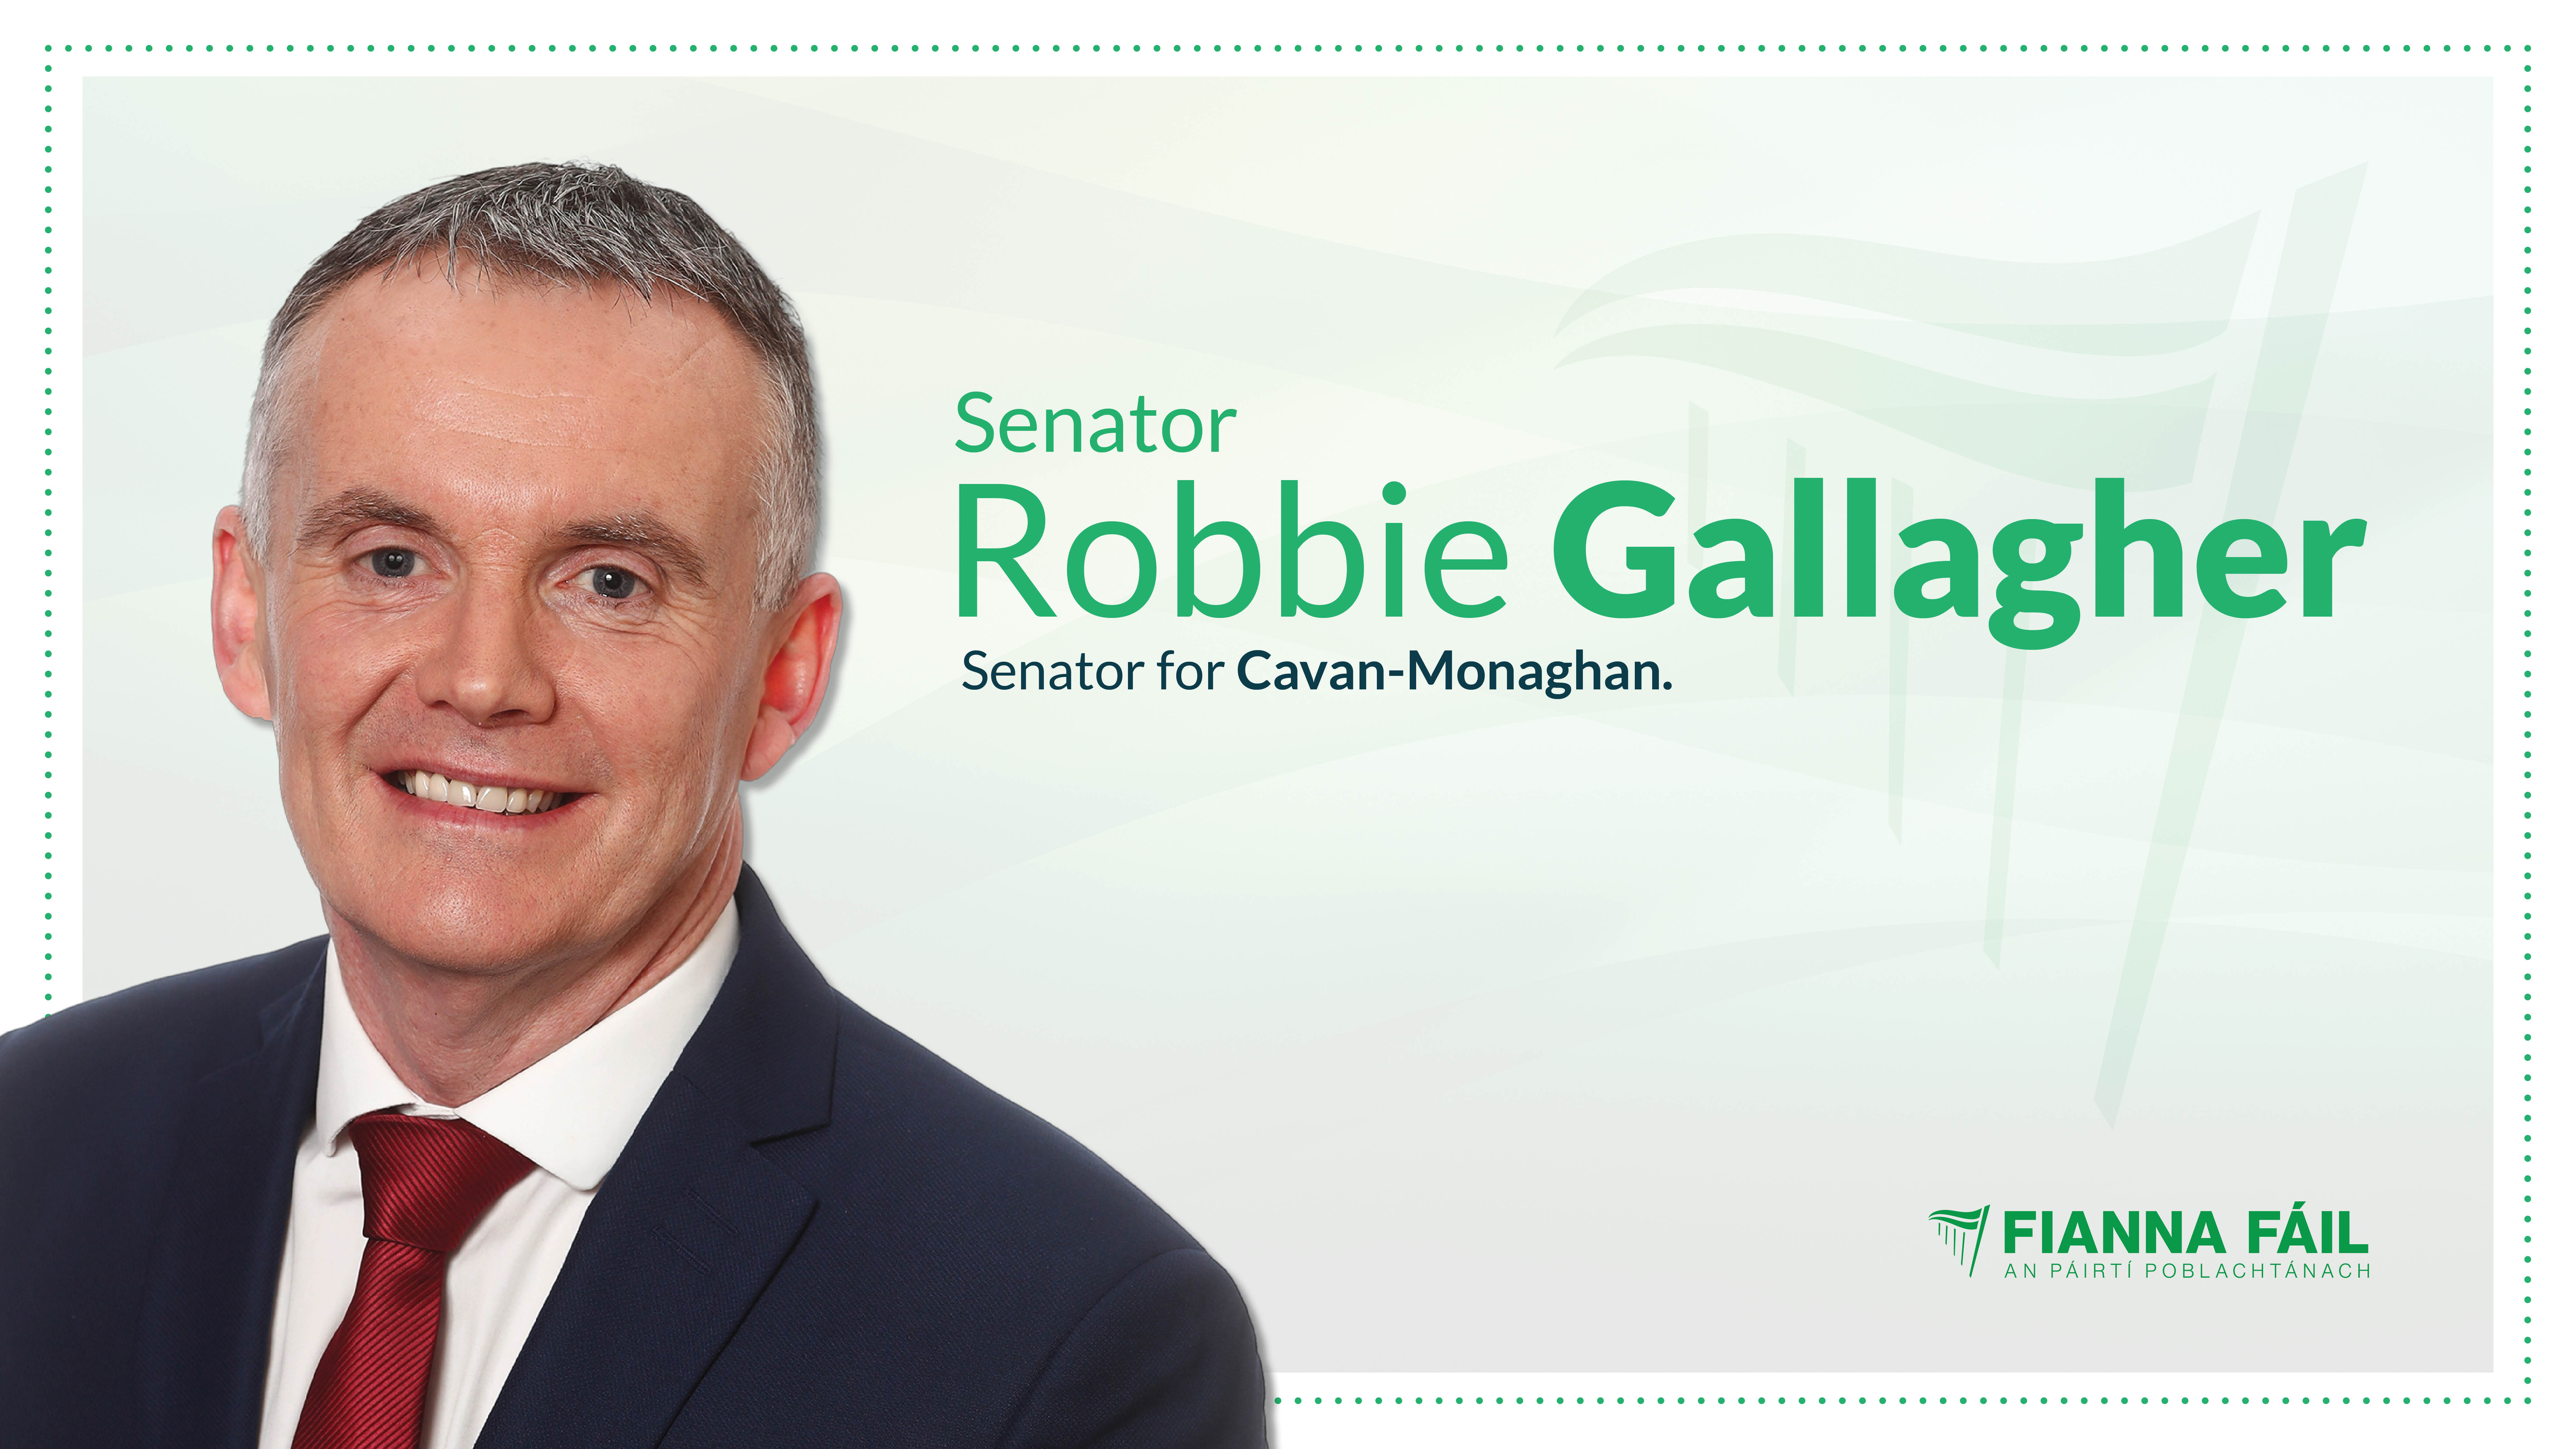 Robbie_Gallagher_FF_CavanMonaghan-Apr-26-2021-10-30-40-34-PM